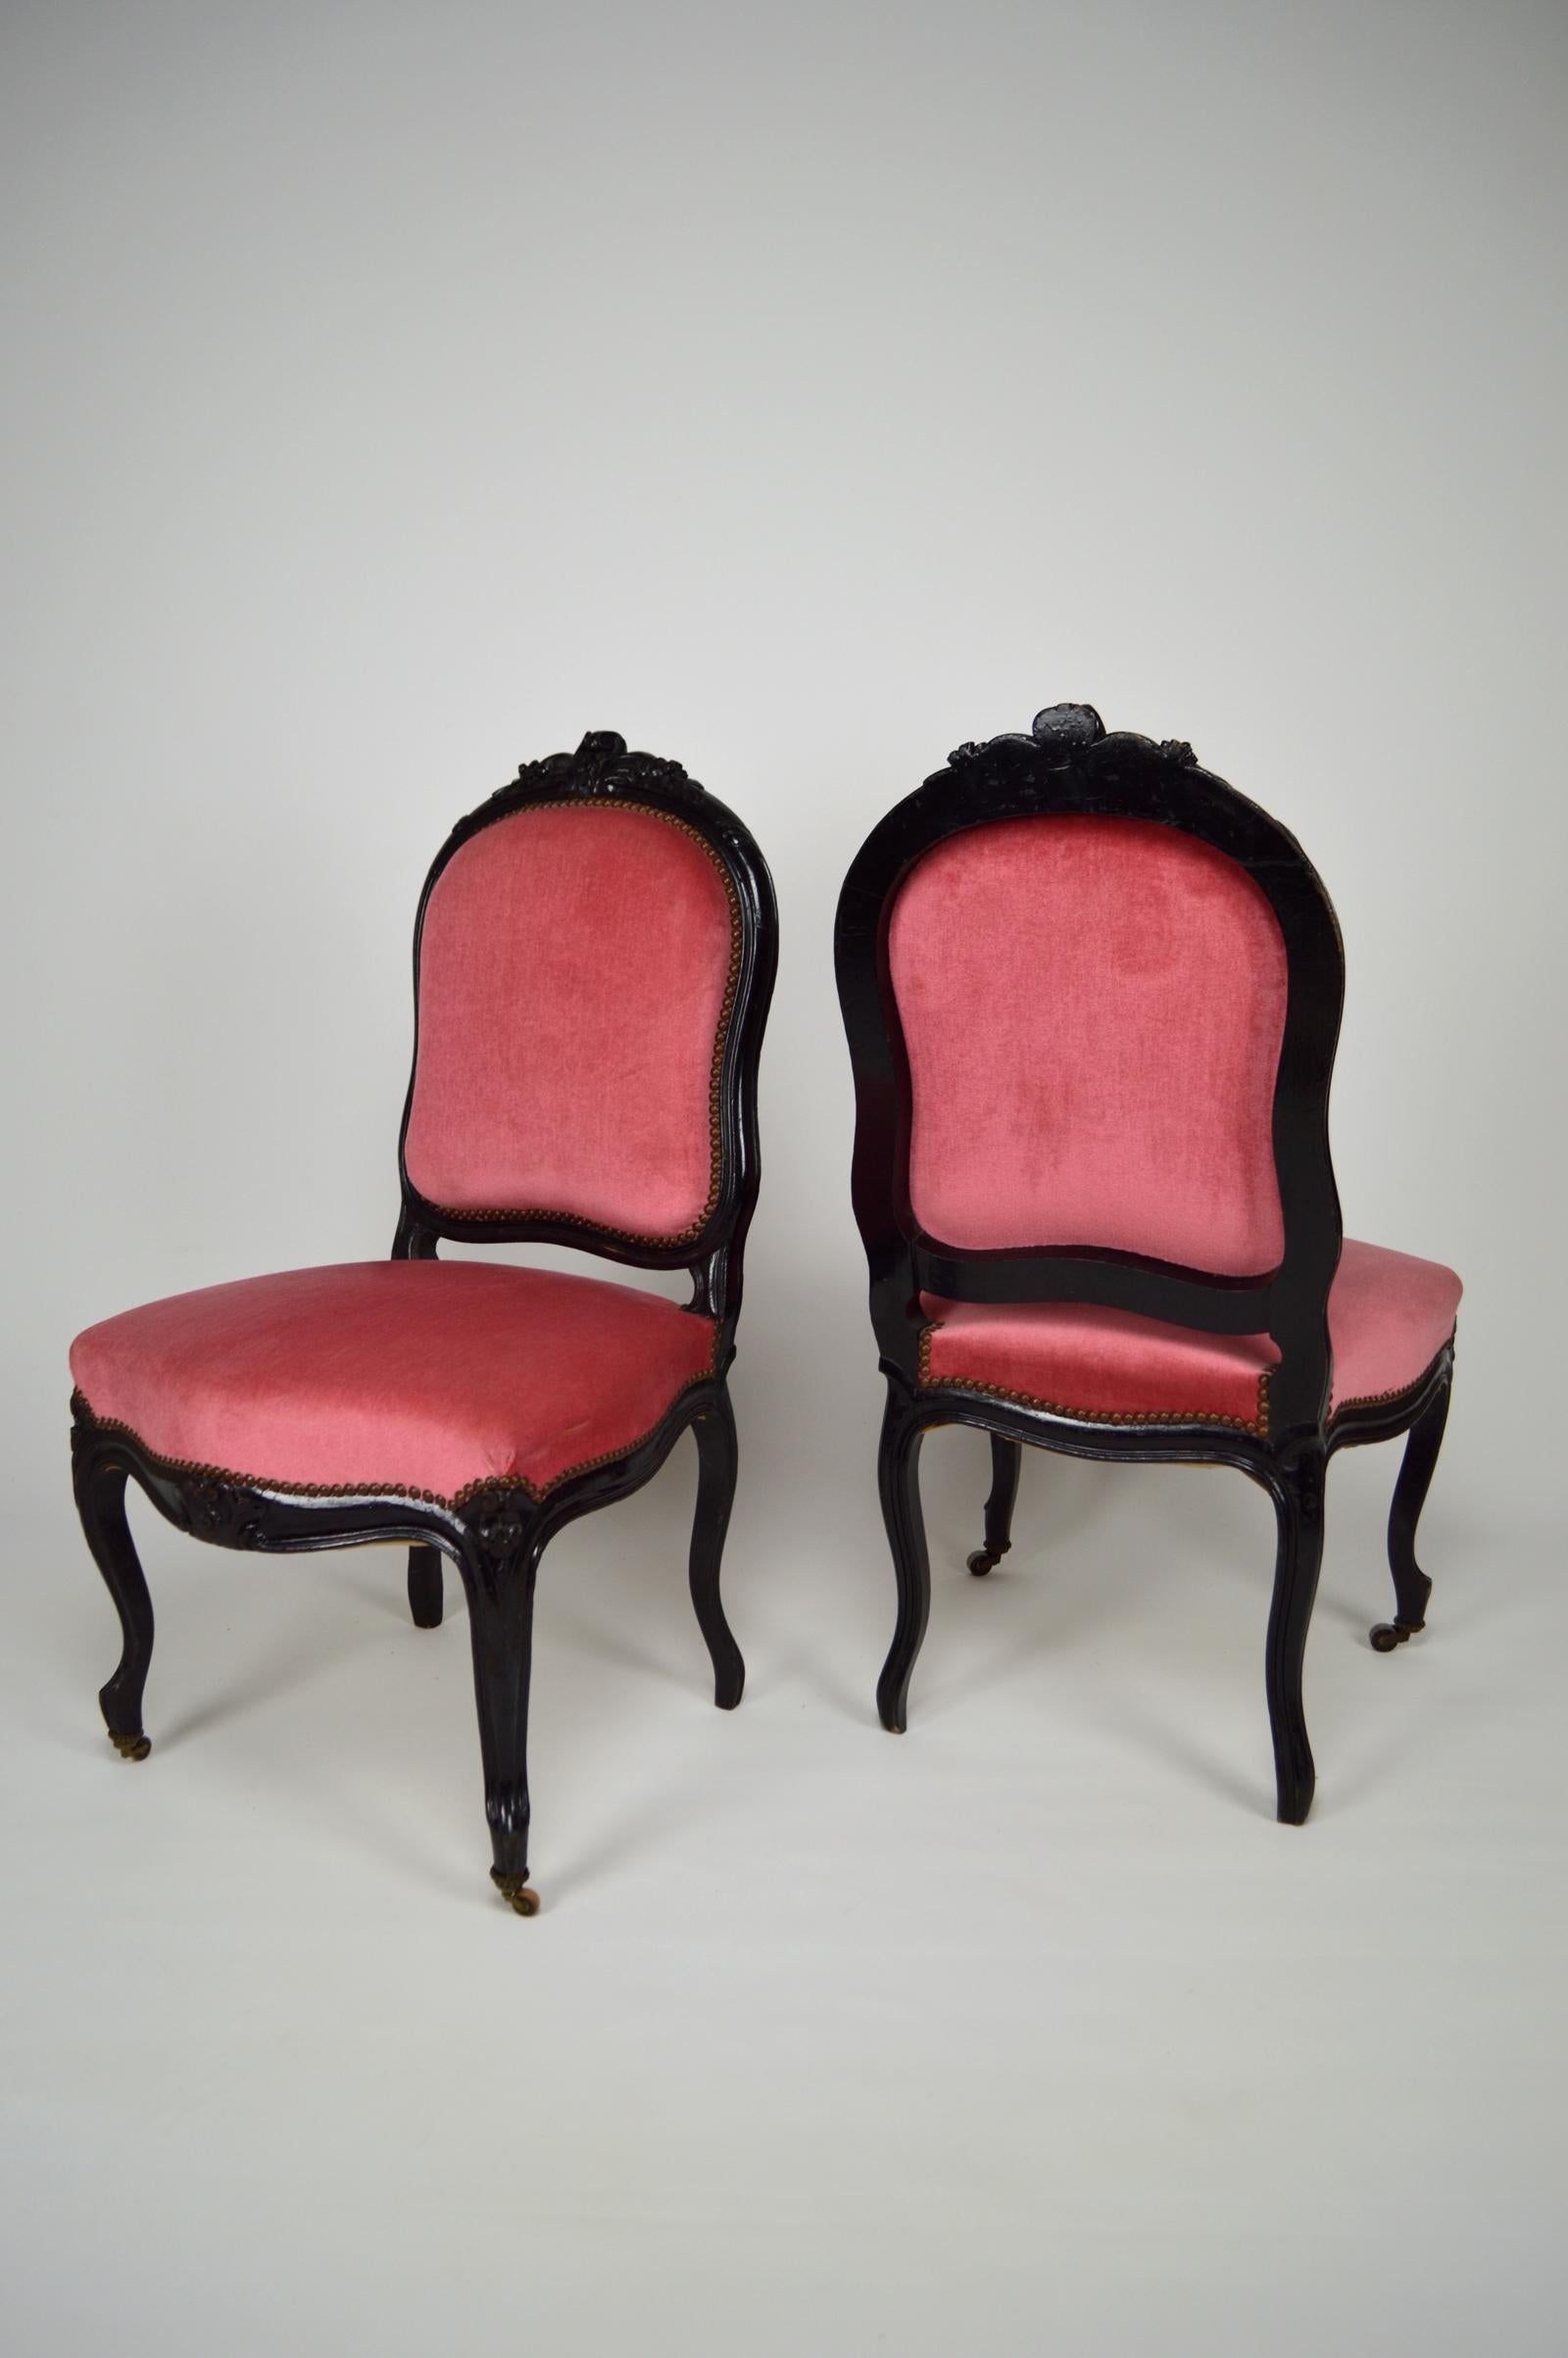 Paire de chaises d'appoint en bois ébonisé et sculpté.
Les sièges et les dossiers sont recouverts d'un tissu en velours rose.
Les chaises sont montées sur roulettes.

Style Napoléon III, France, vers 1870.

En bon état.

Dimensions :
hauteur 97